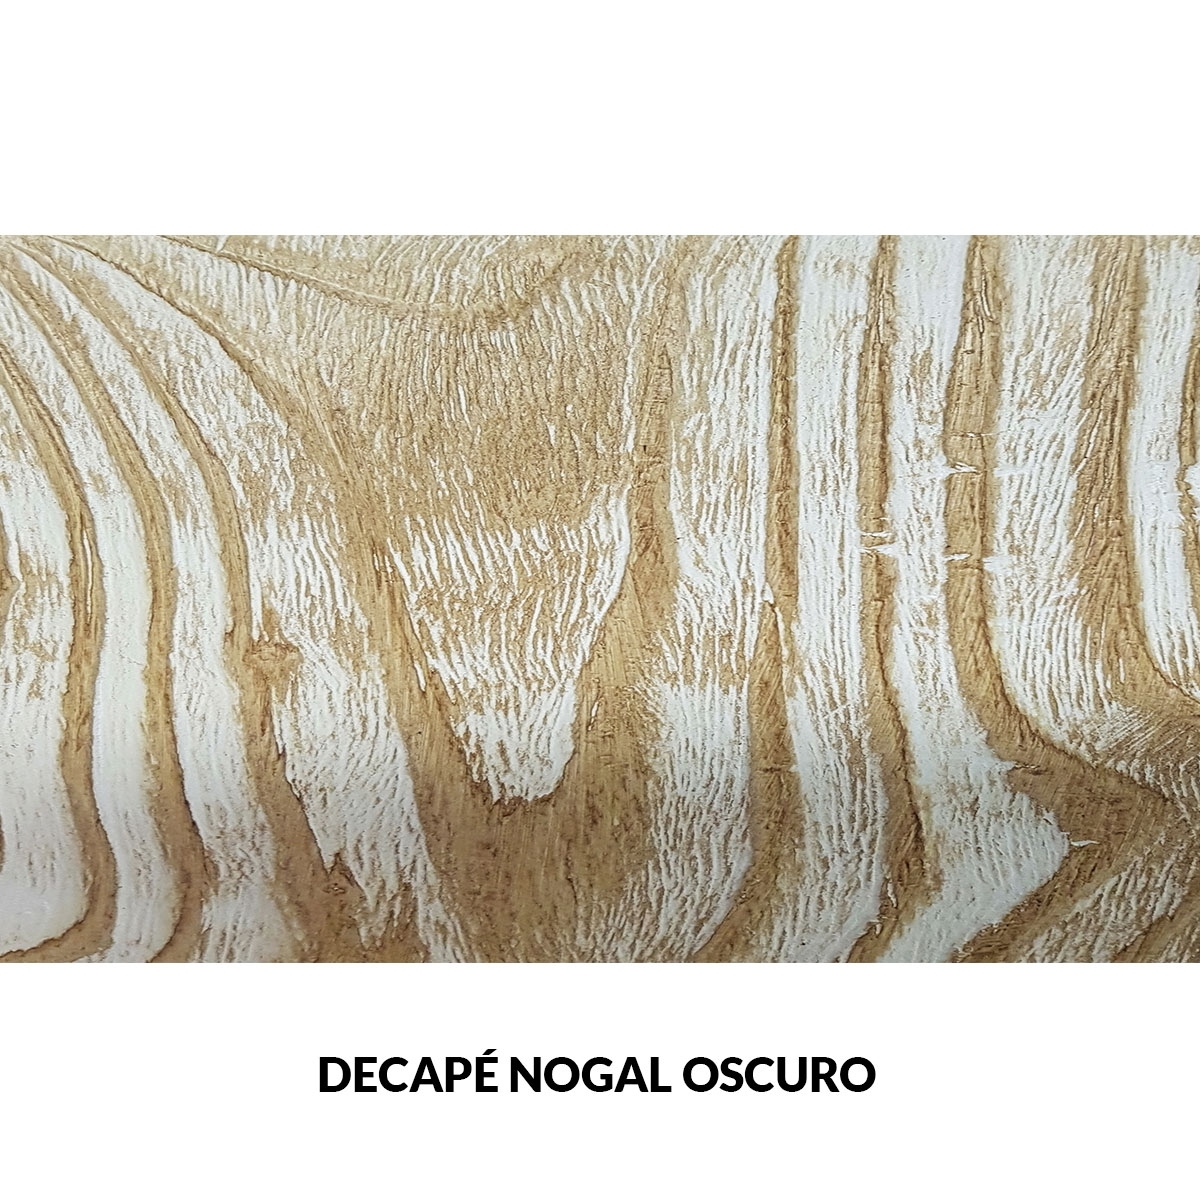 Panel rústico sin lamas imitación madera de 400x62cm decape nogal oscuro